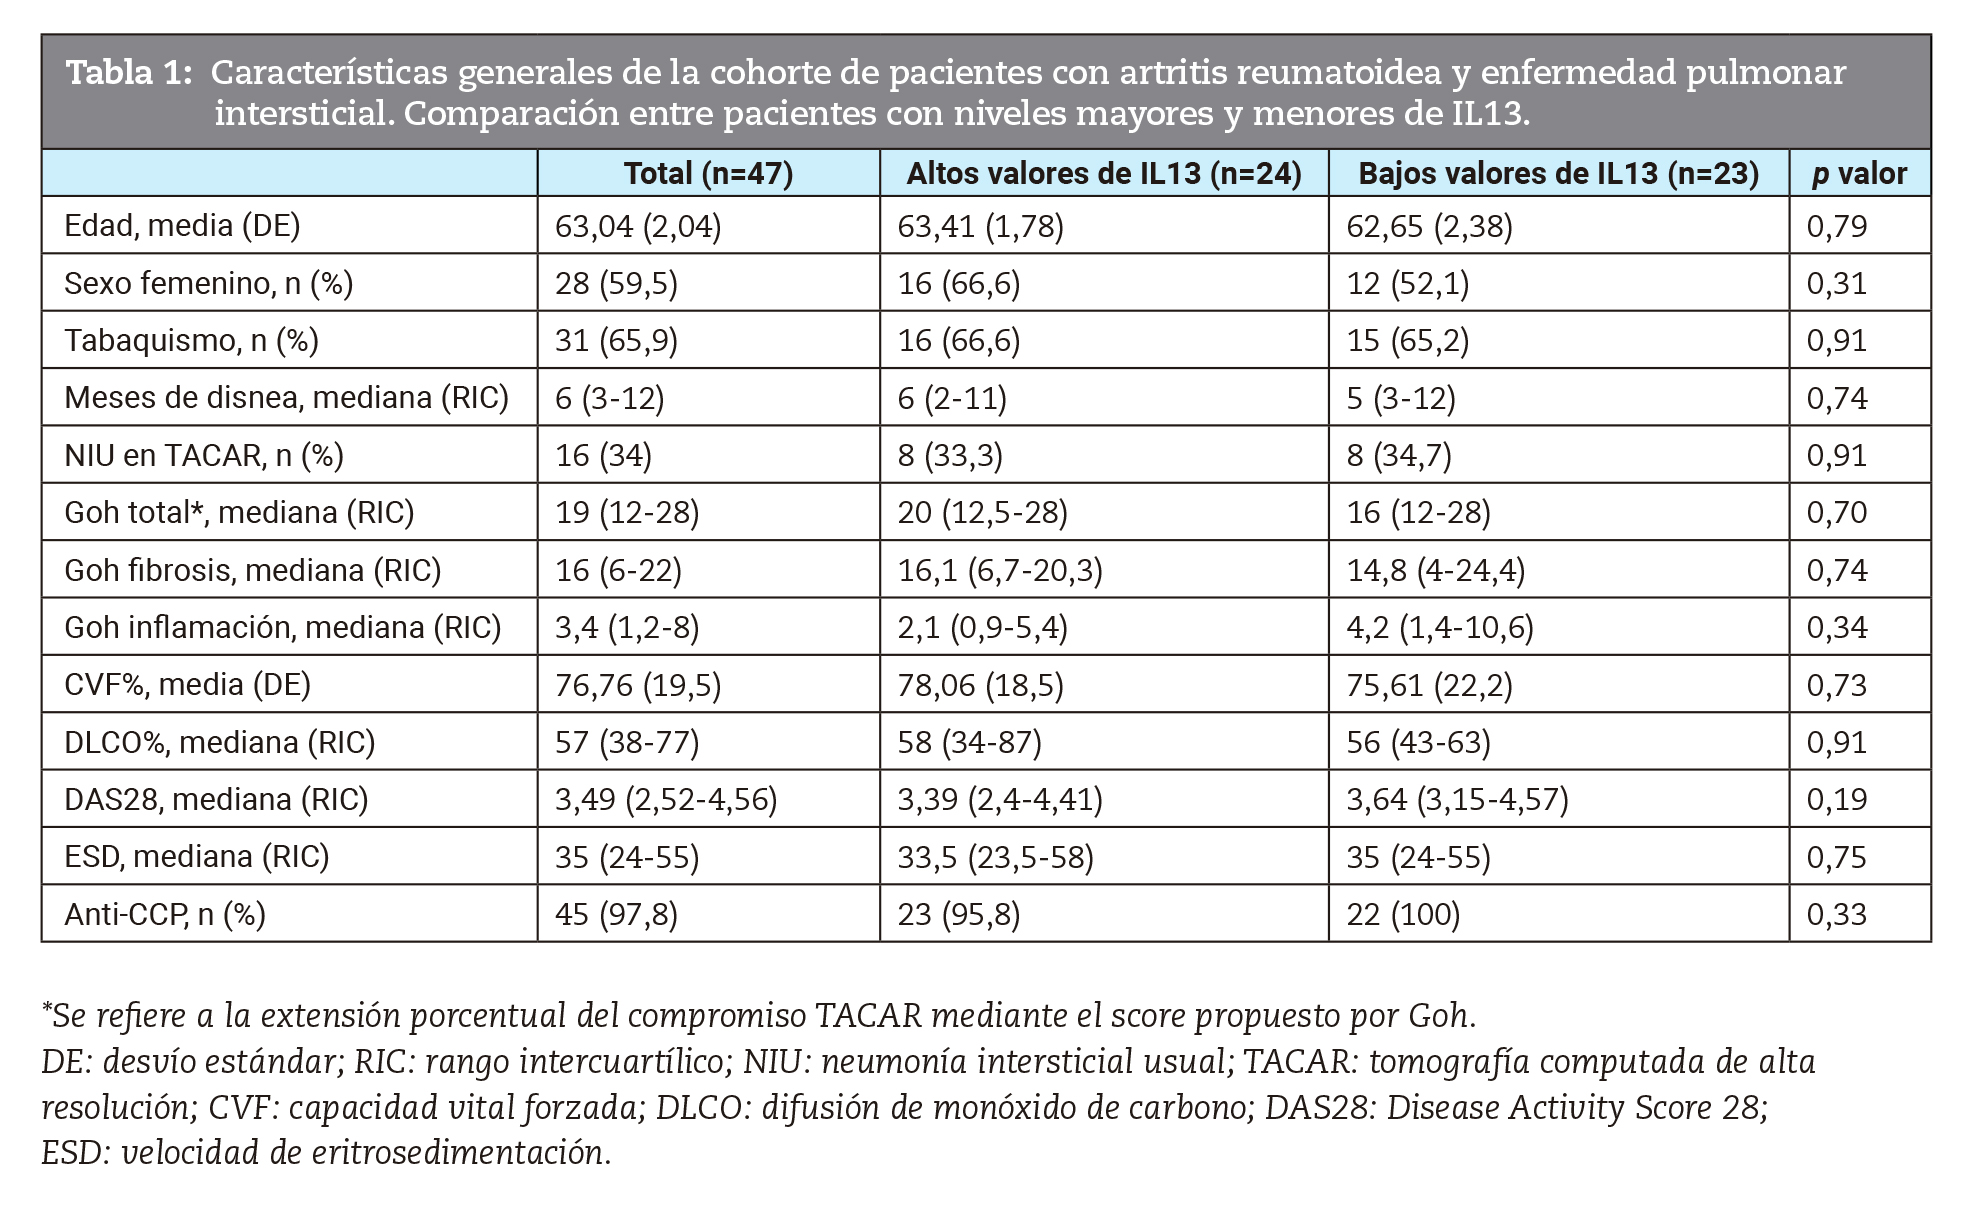 Características generales de la cohorte de pacientes con artritis reumatoidea y enfermedad pulmonar intersticial. Comparación entre pacientes con niveles mayores y menores de IL13.